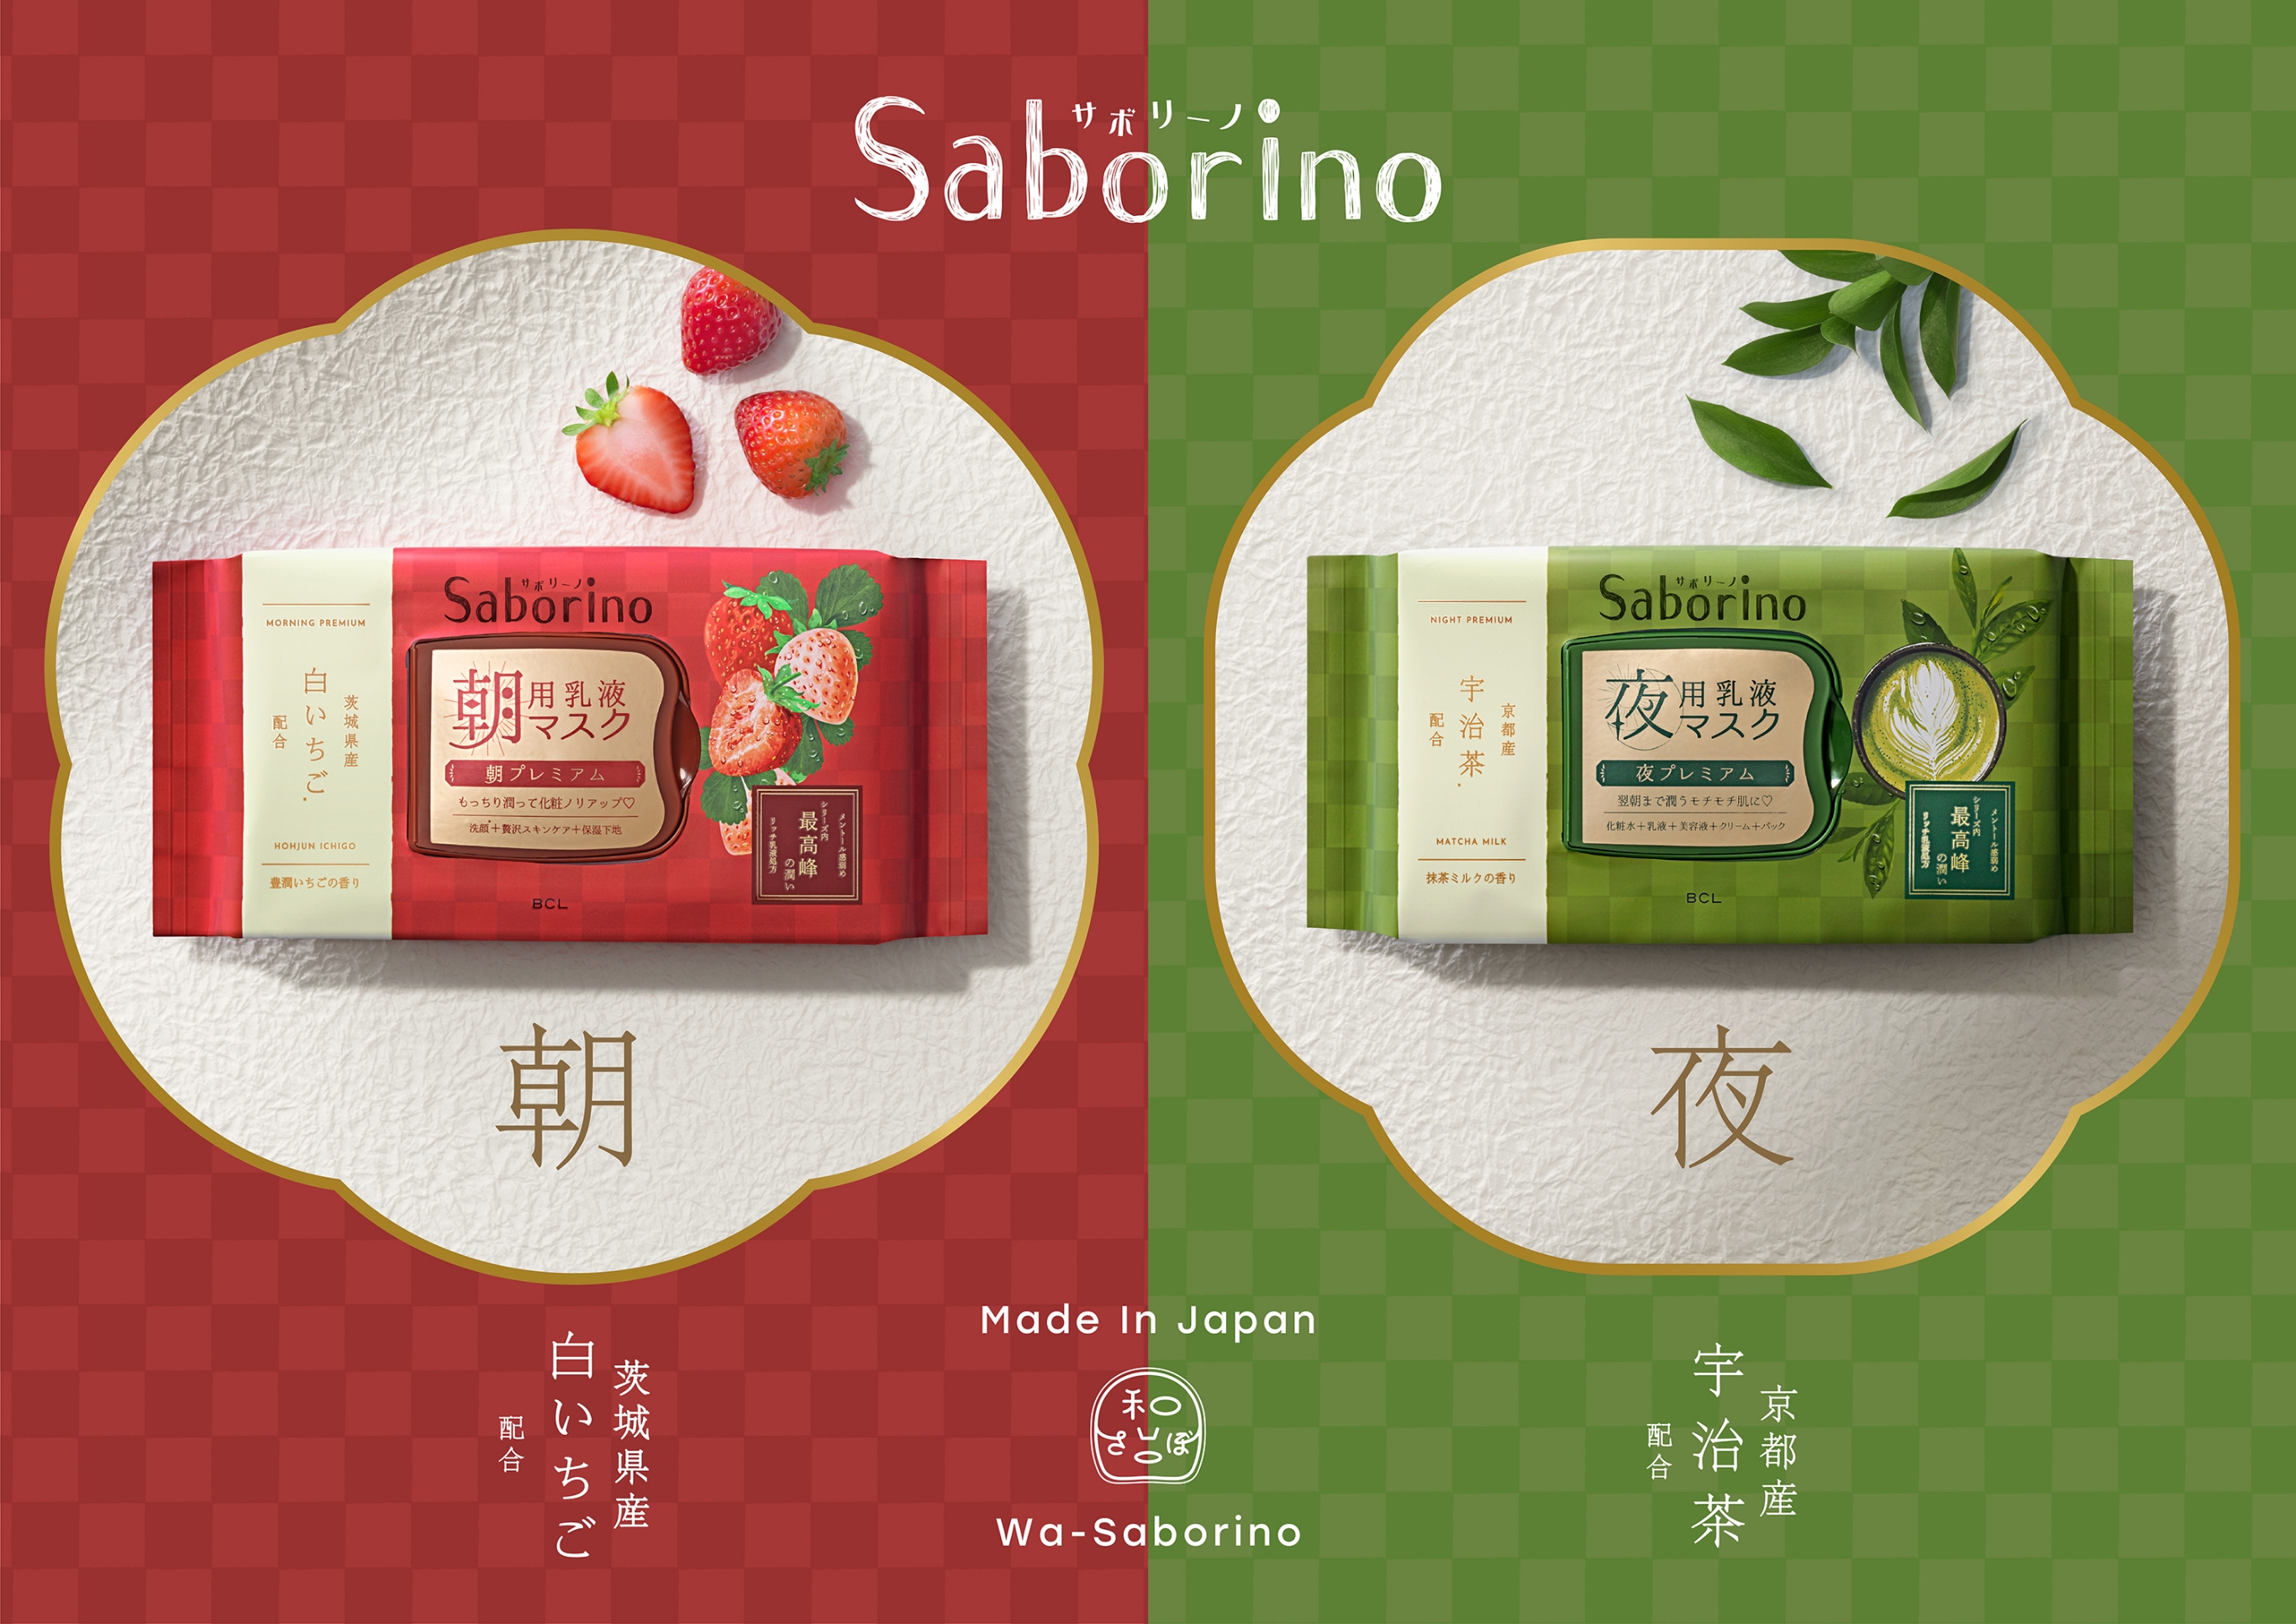 Saborino サボリーノ Made In Japan Wa-Saborino 茨城県産白いちご配合 京都産宇治茶配合